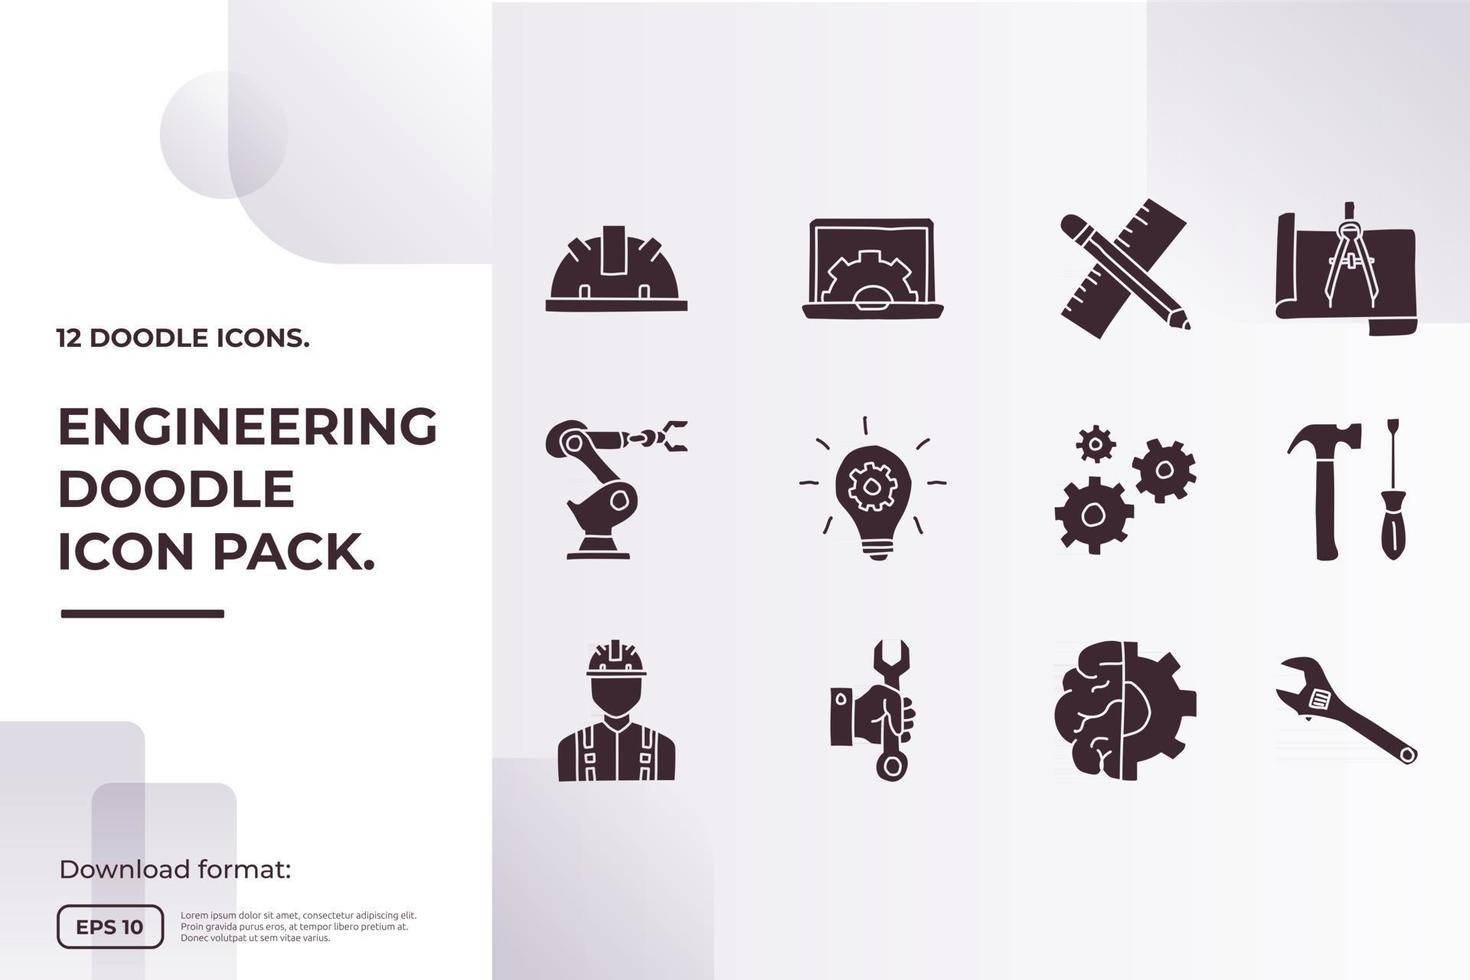 Concepto de icono de doodle relacionado con la ingeniería y la arquitectura para la ilustración de vector de servicio industrial, mantenimiento, fabricación, negocios